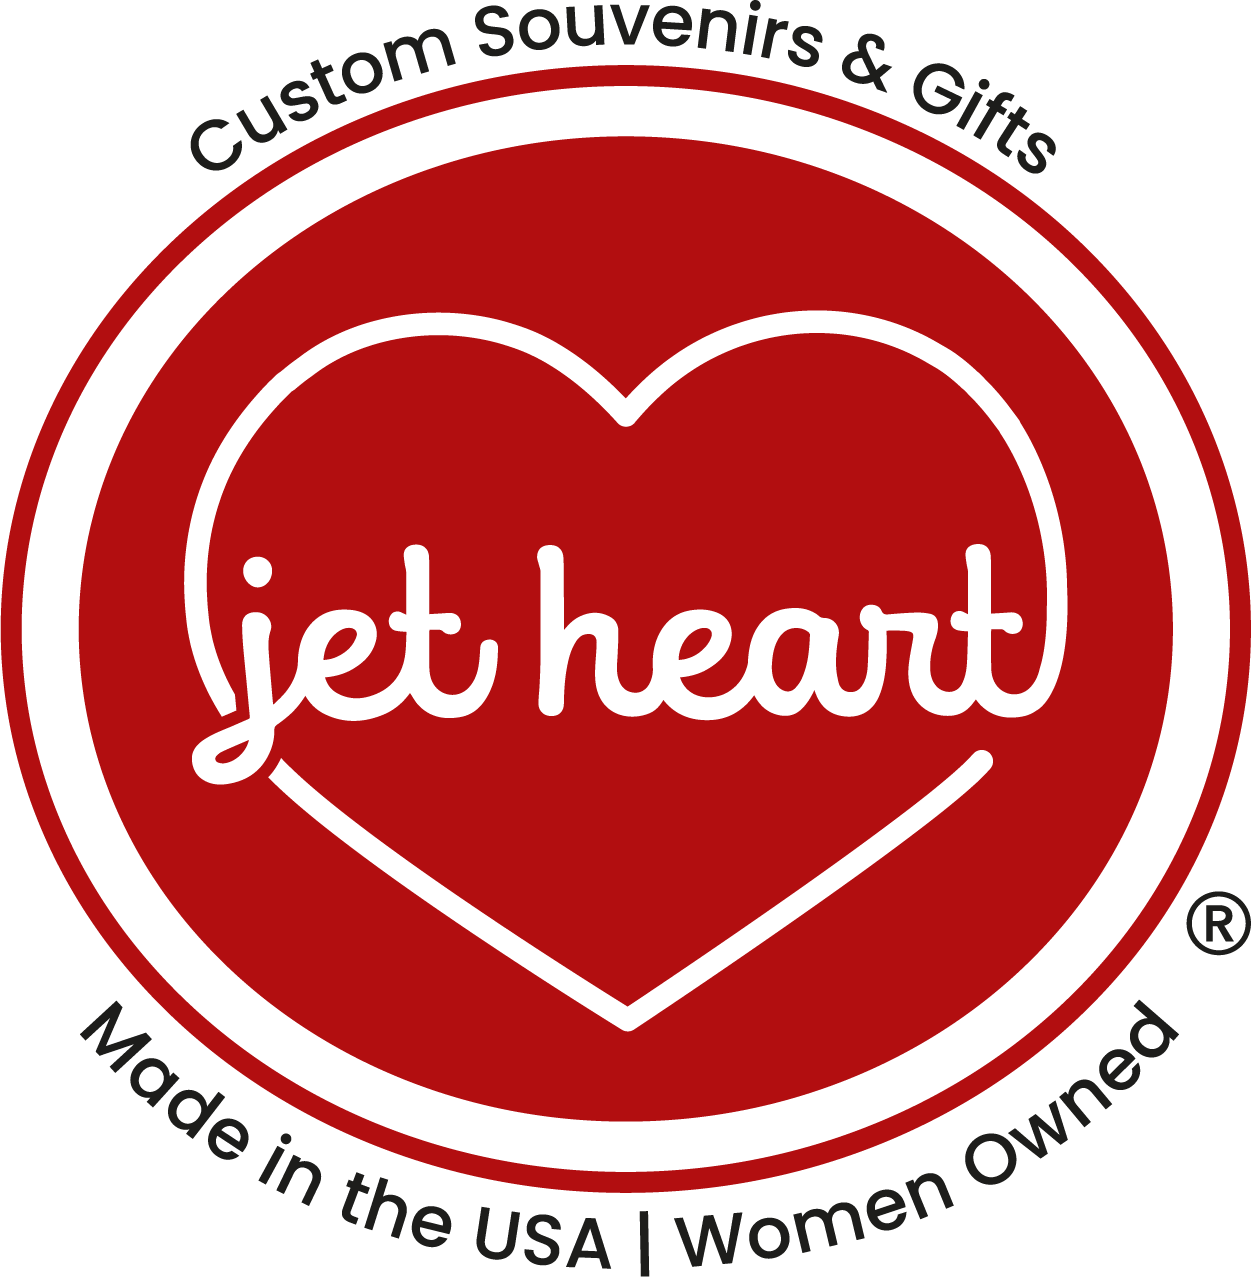 jet heart logo